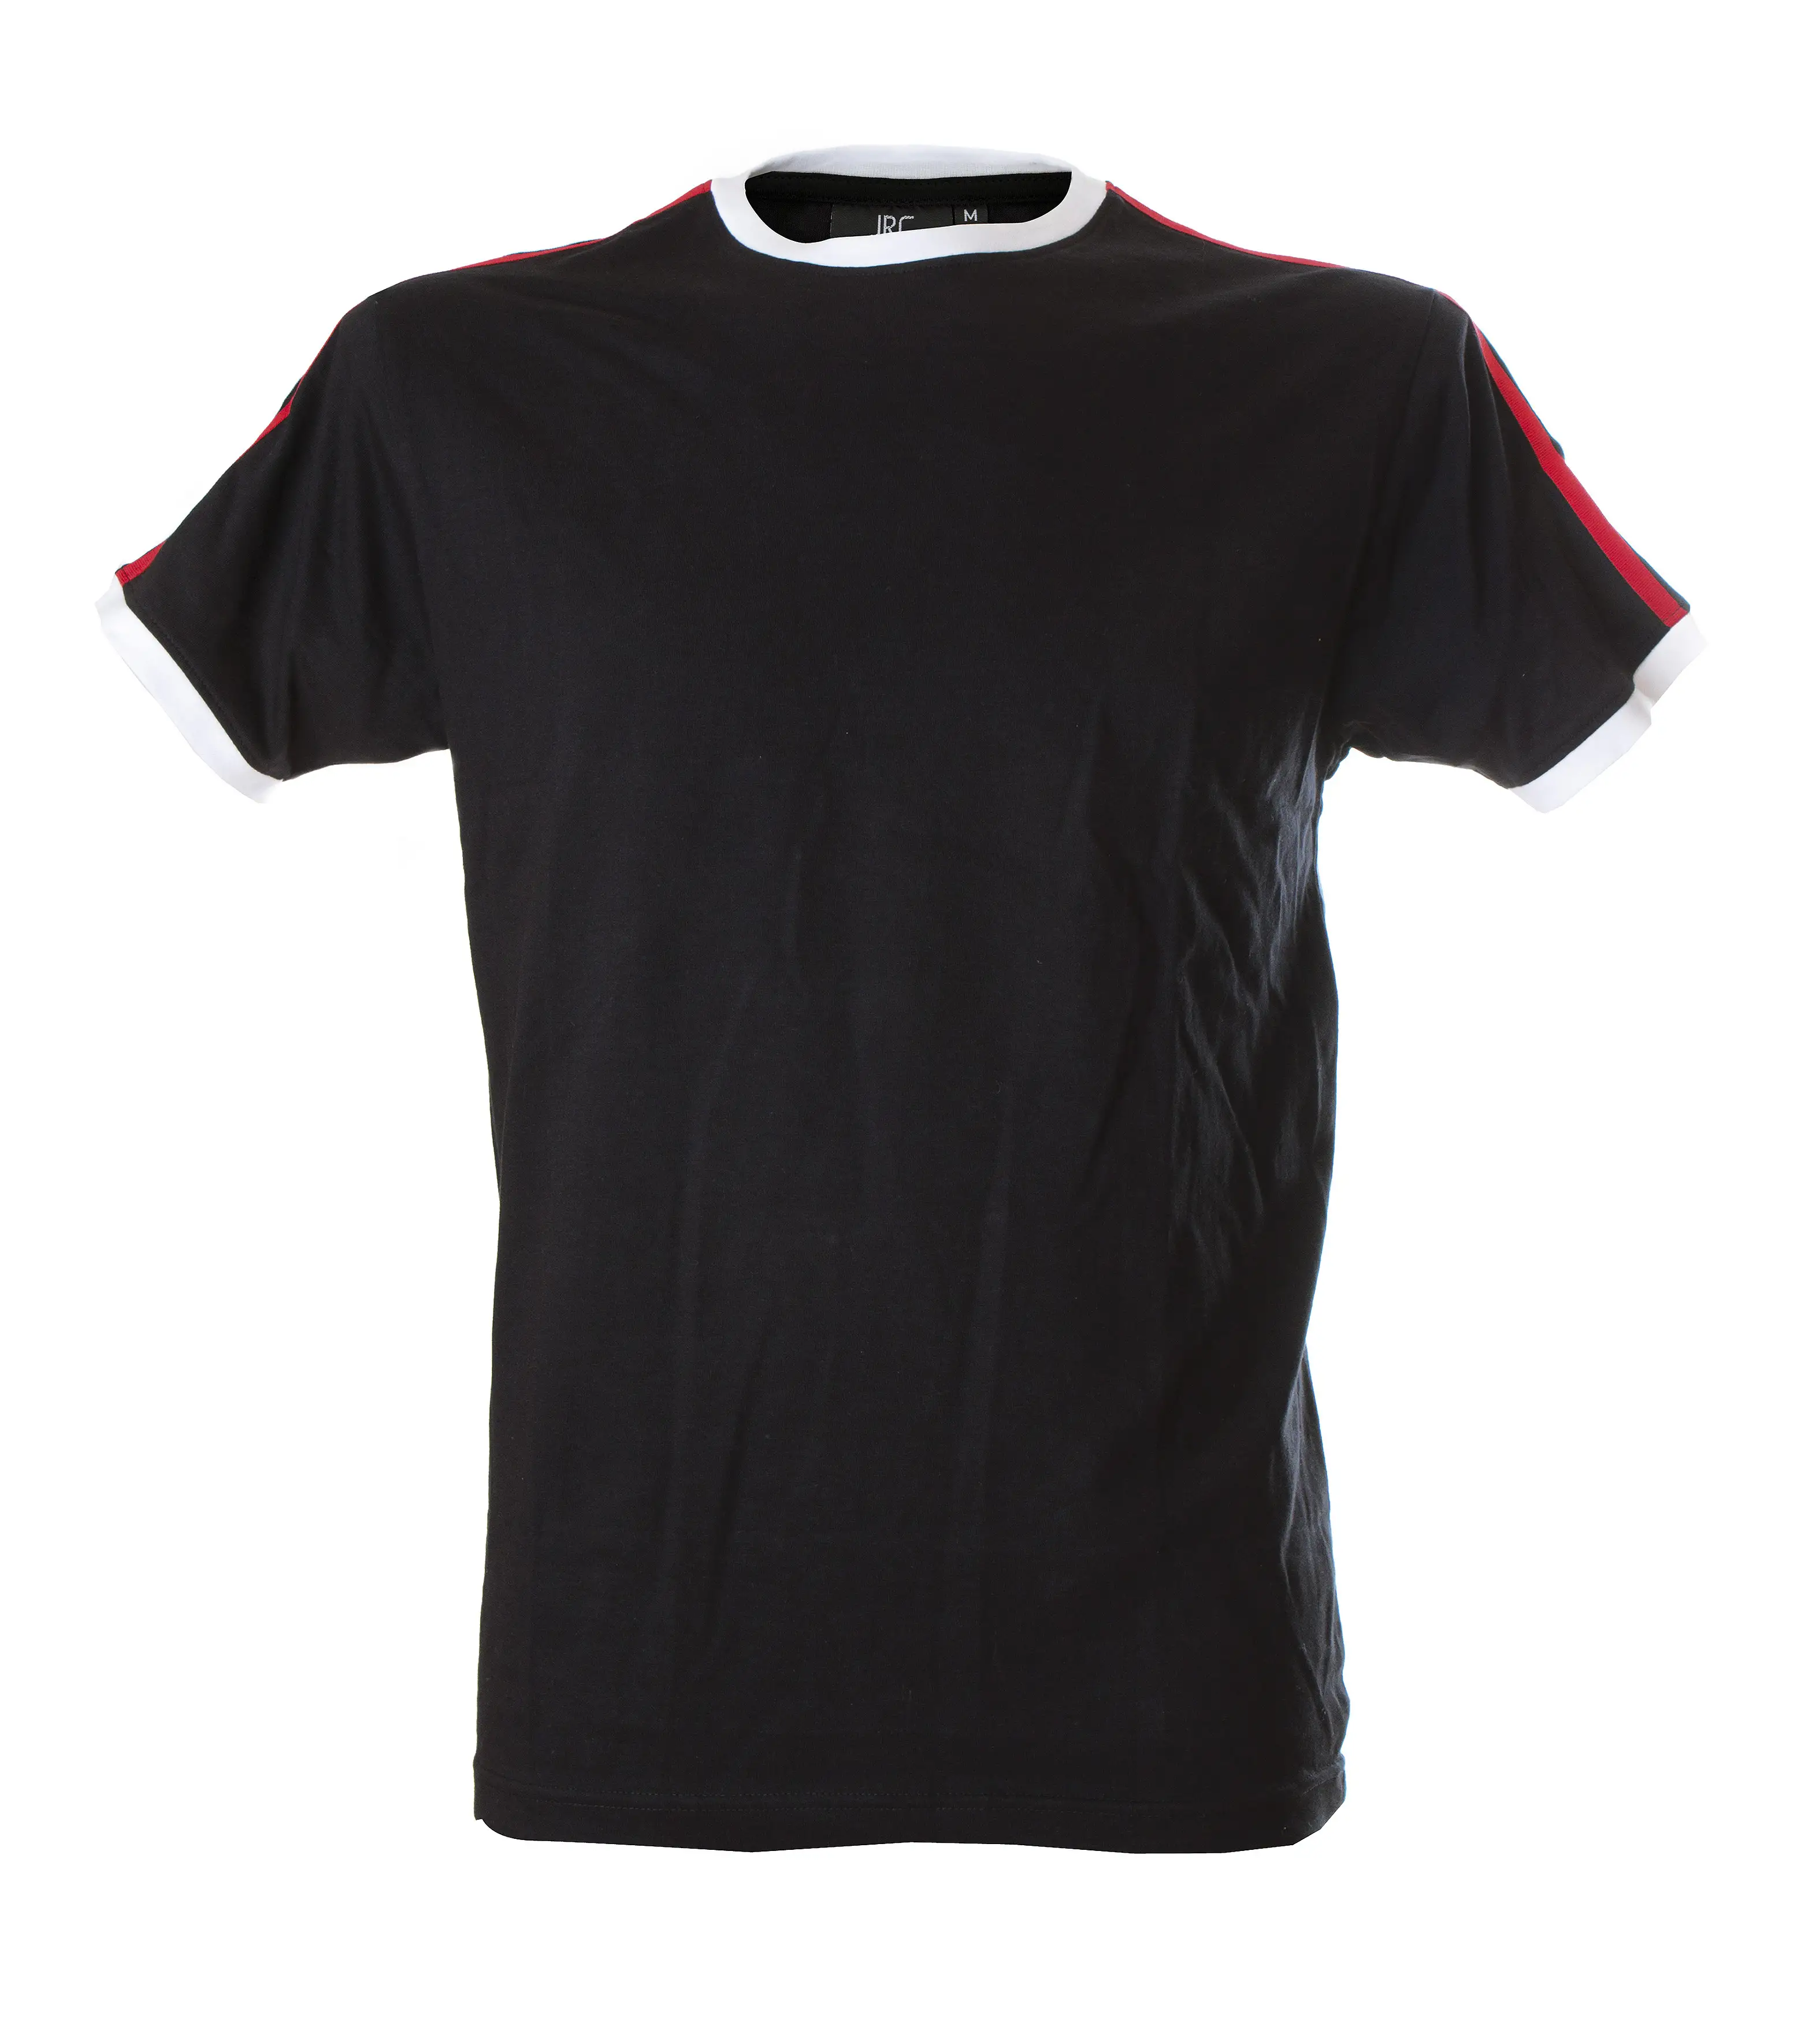 T-shirt firenze - black - s